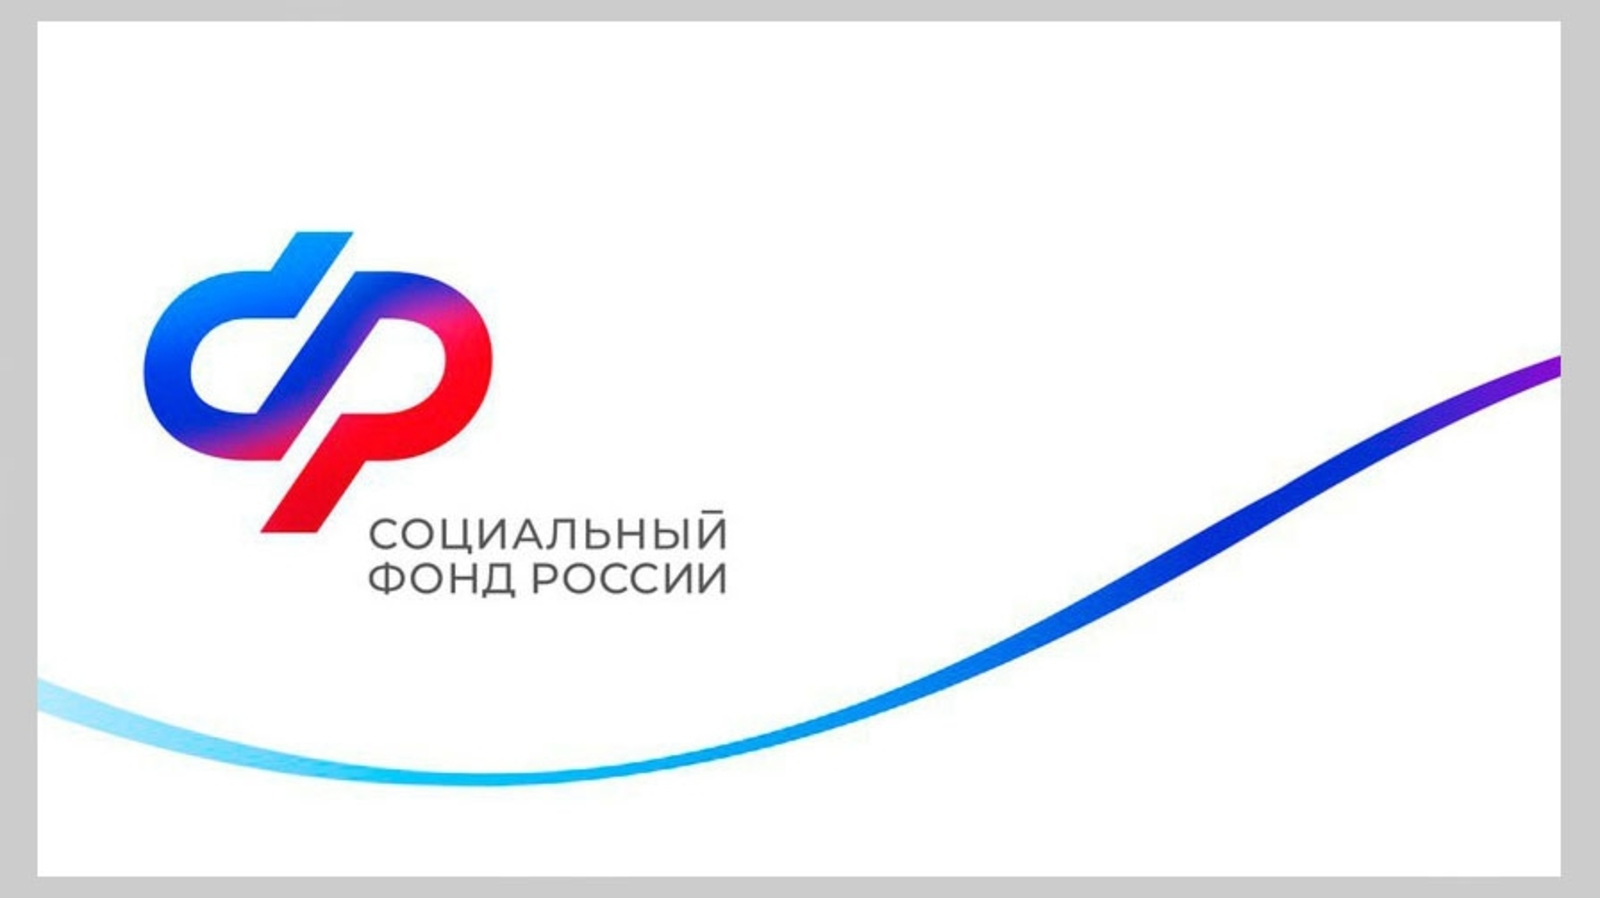 Более 5,4 тысячи жителей Башкортостана приобрели свыше 200 тысяч технических средств реабилитации с помощью электронных сертификатов